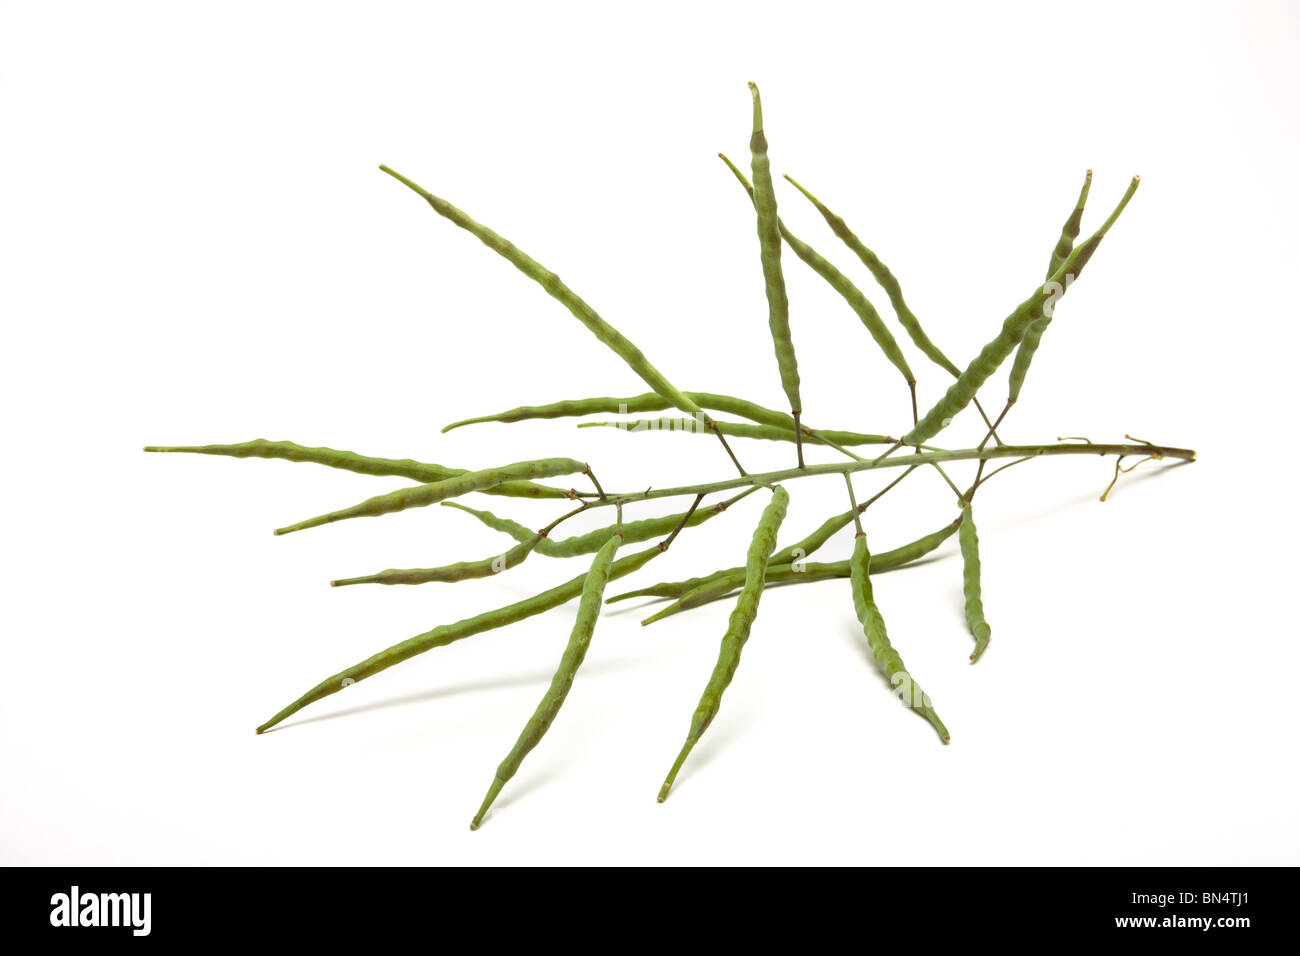 La Canola o semi oleosi di colza (Brassica napus), stelo con capsule di seme isolata contro uno sfondo bianco. Foto Stock